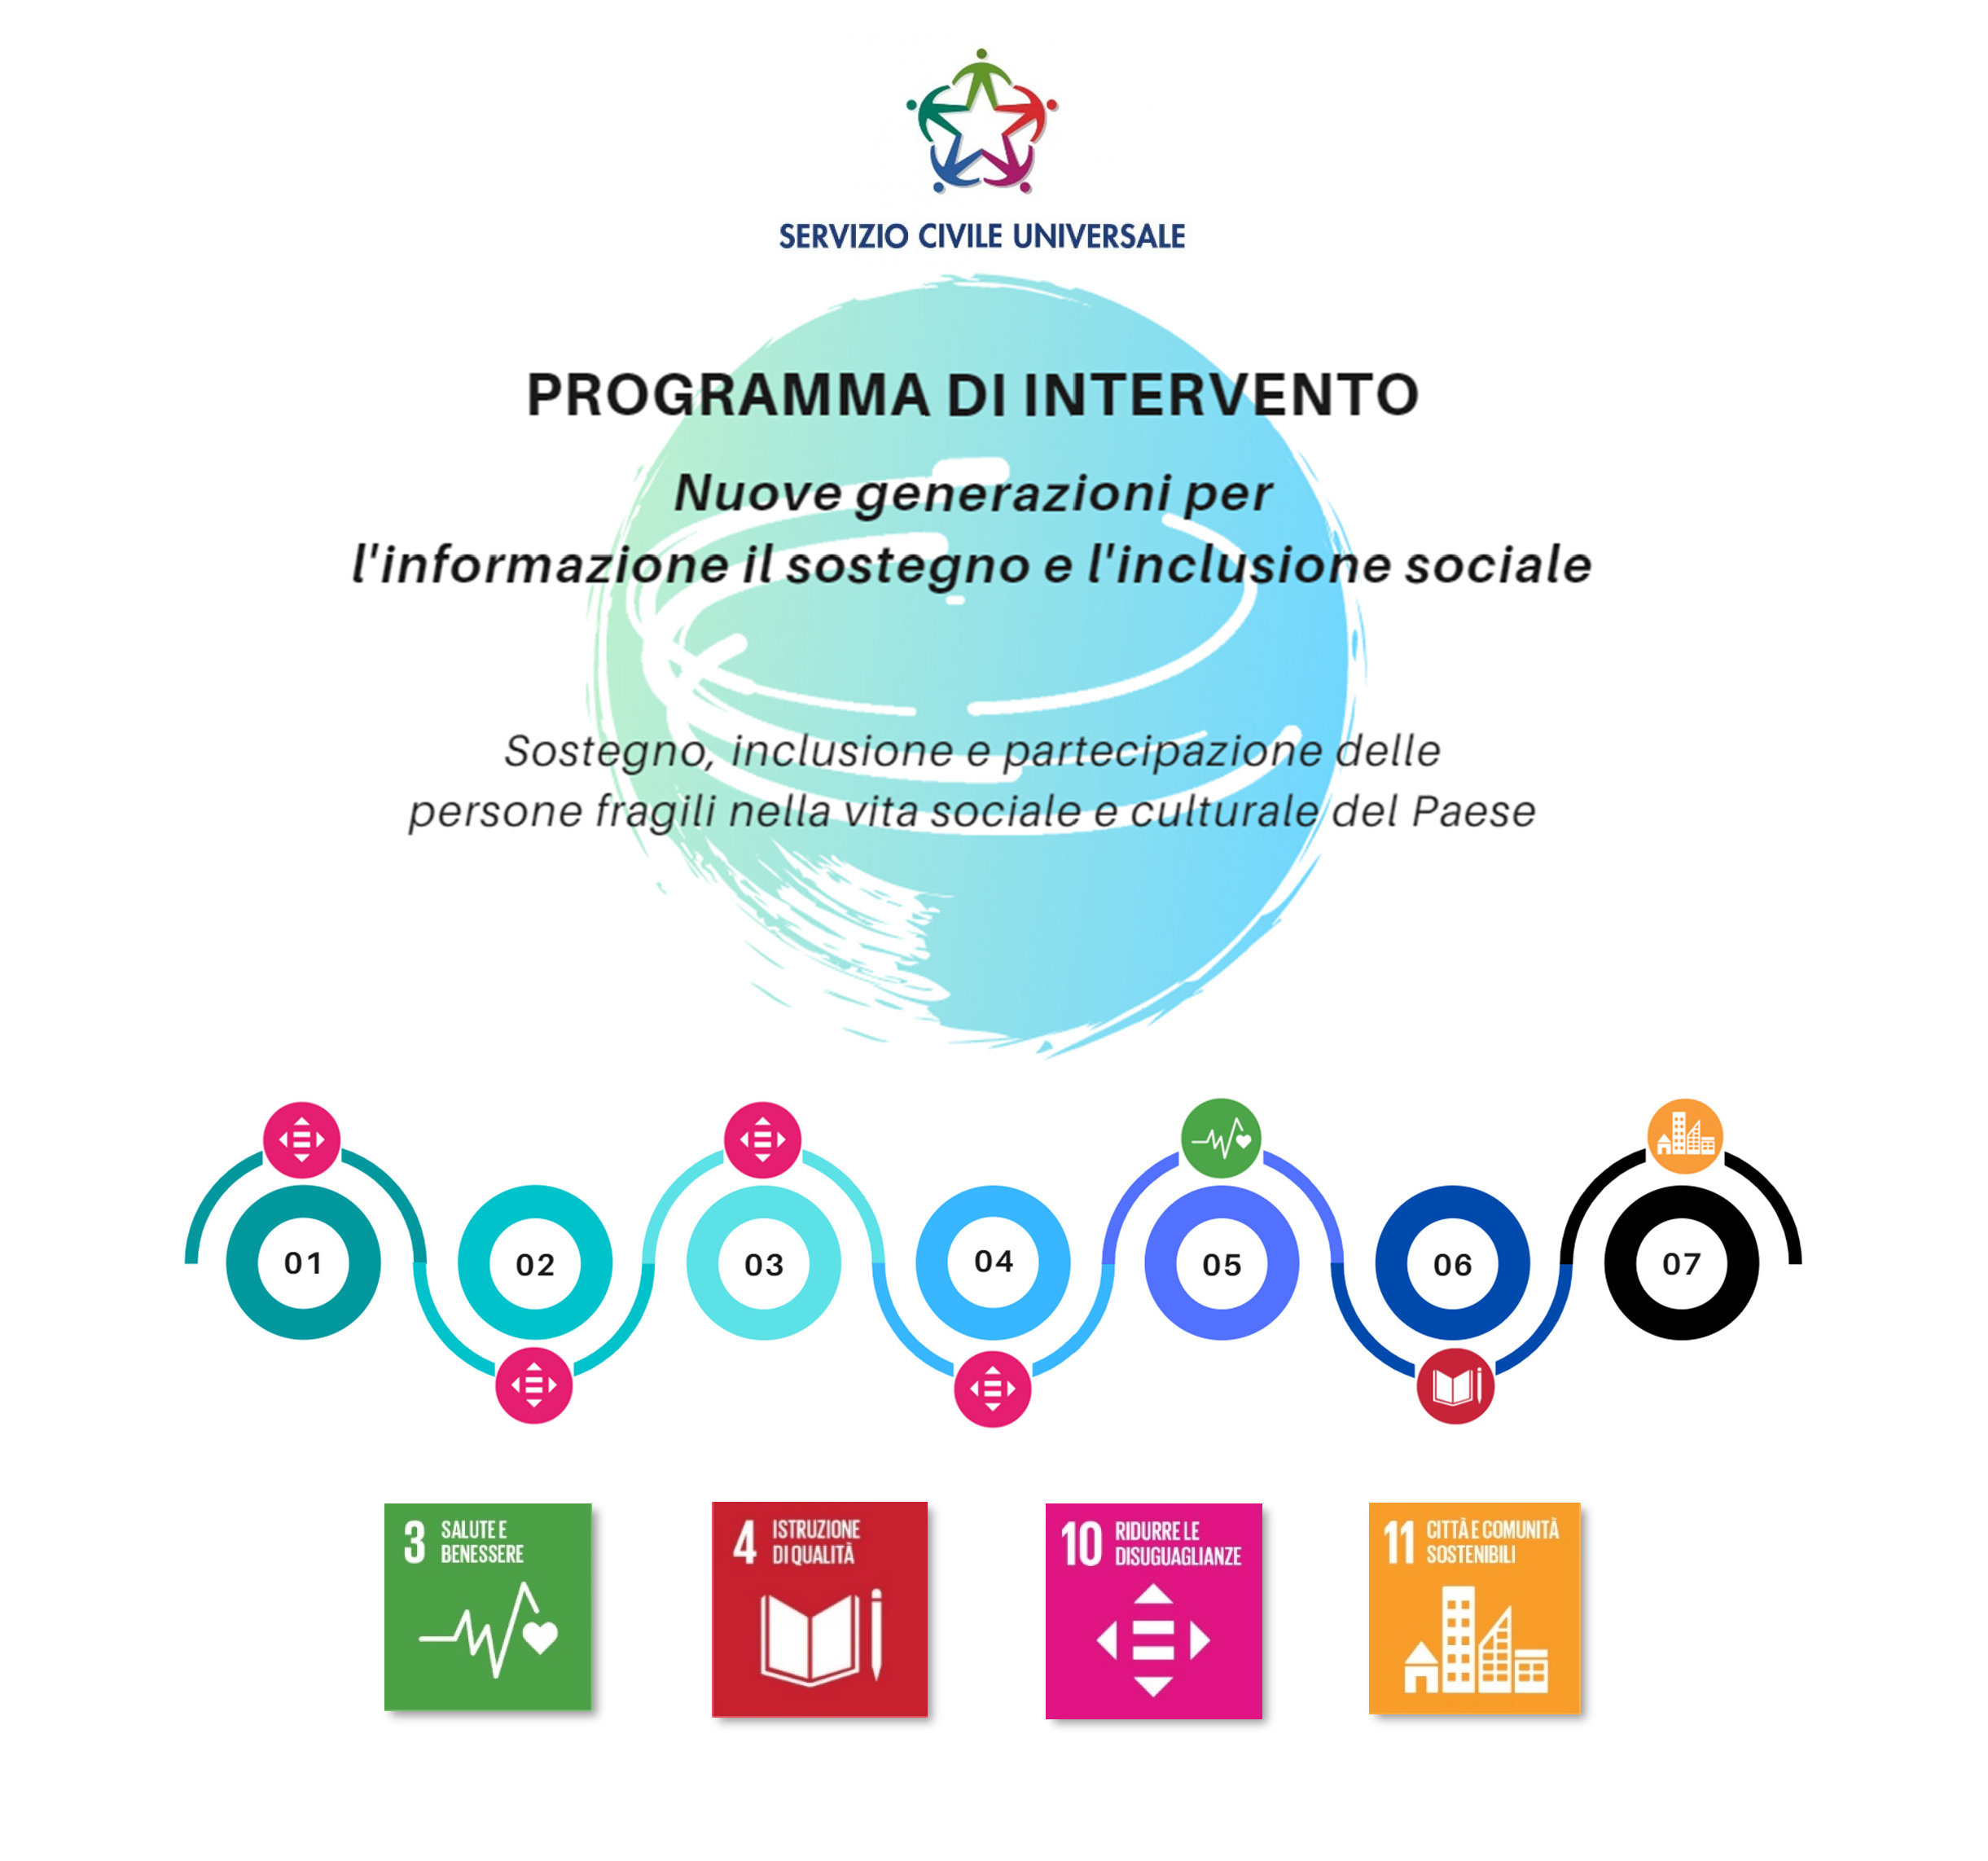 Servizio civile Universale - Programma di intervento - Nuove generazioni per l’informazione il sostegno e l’inclusione sociale